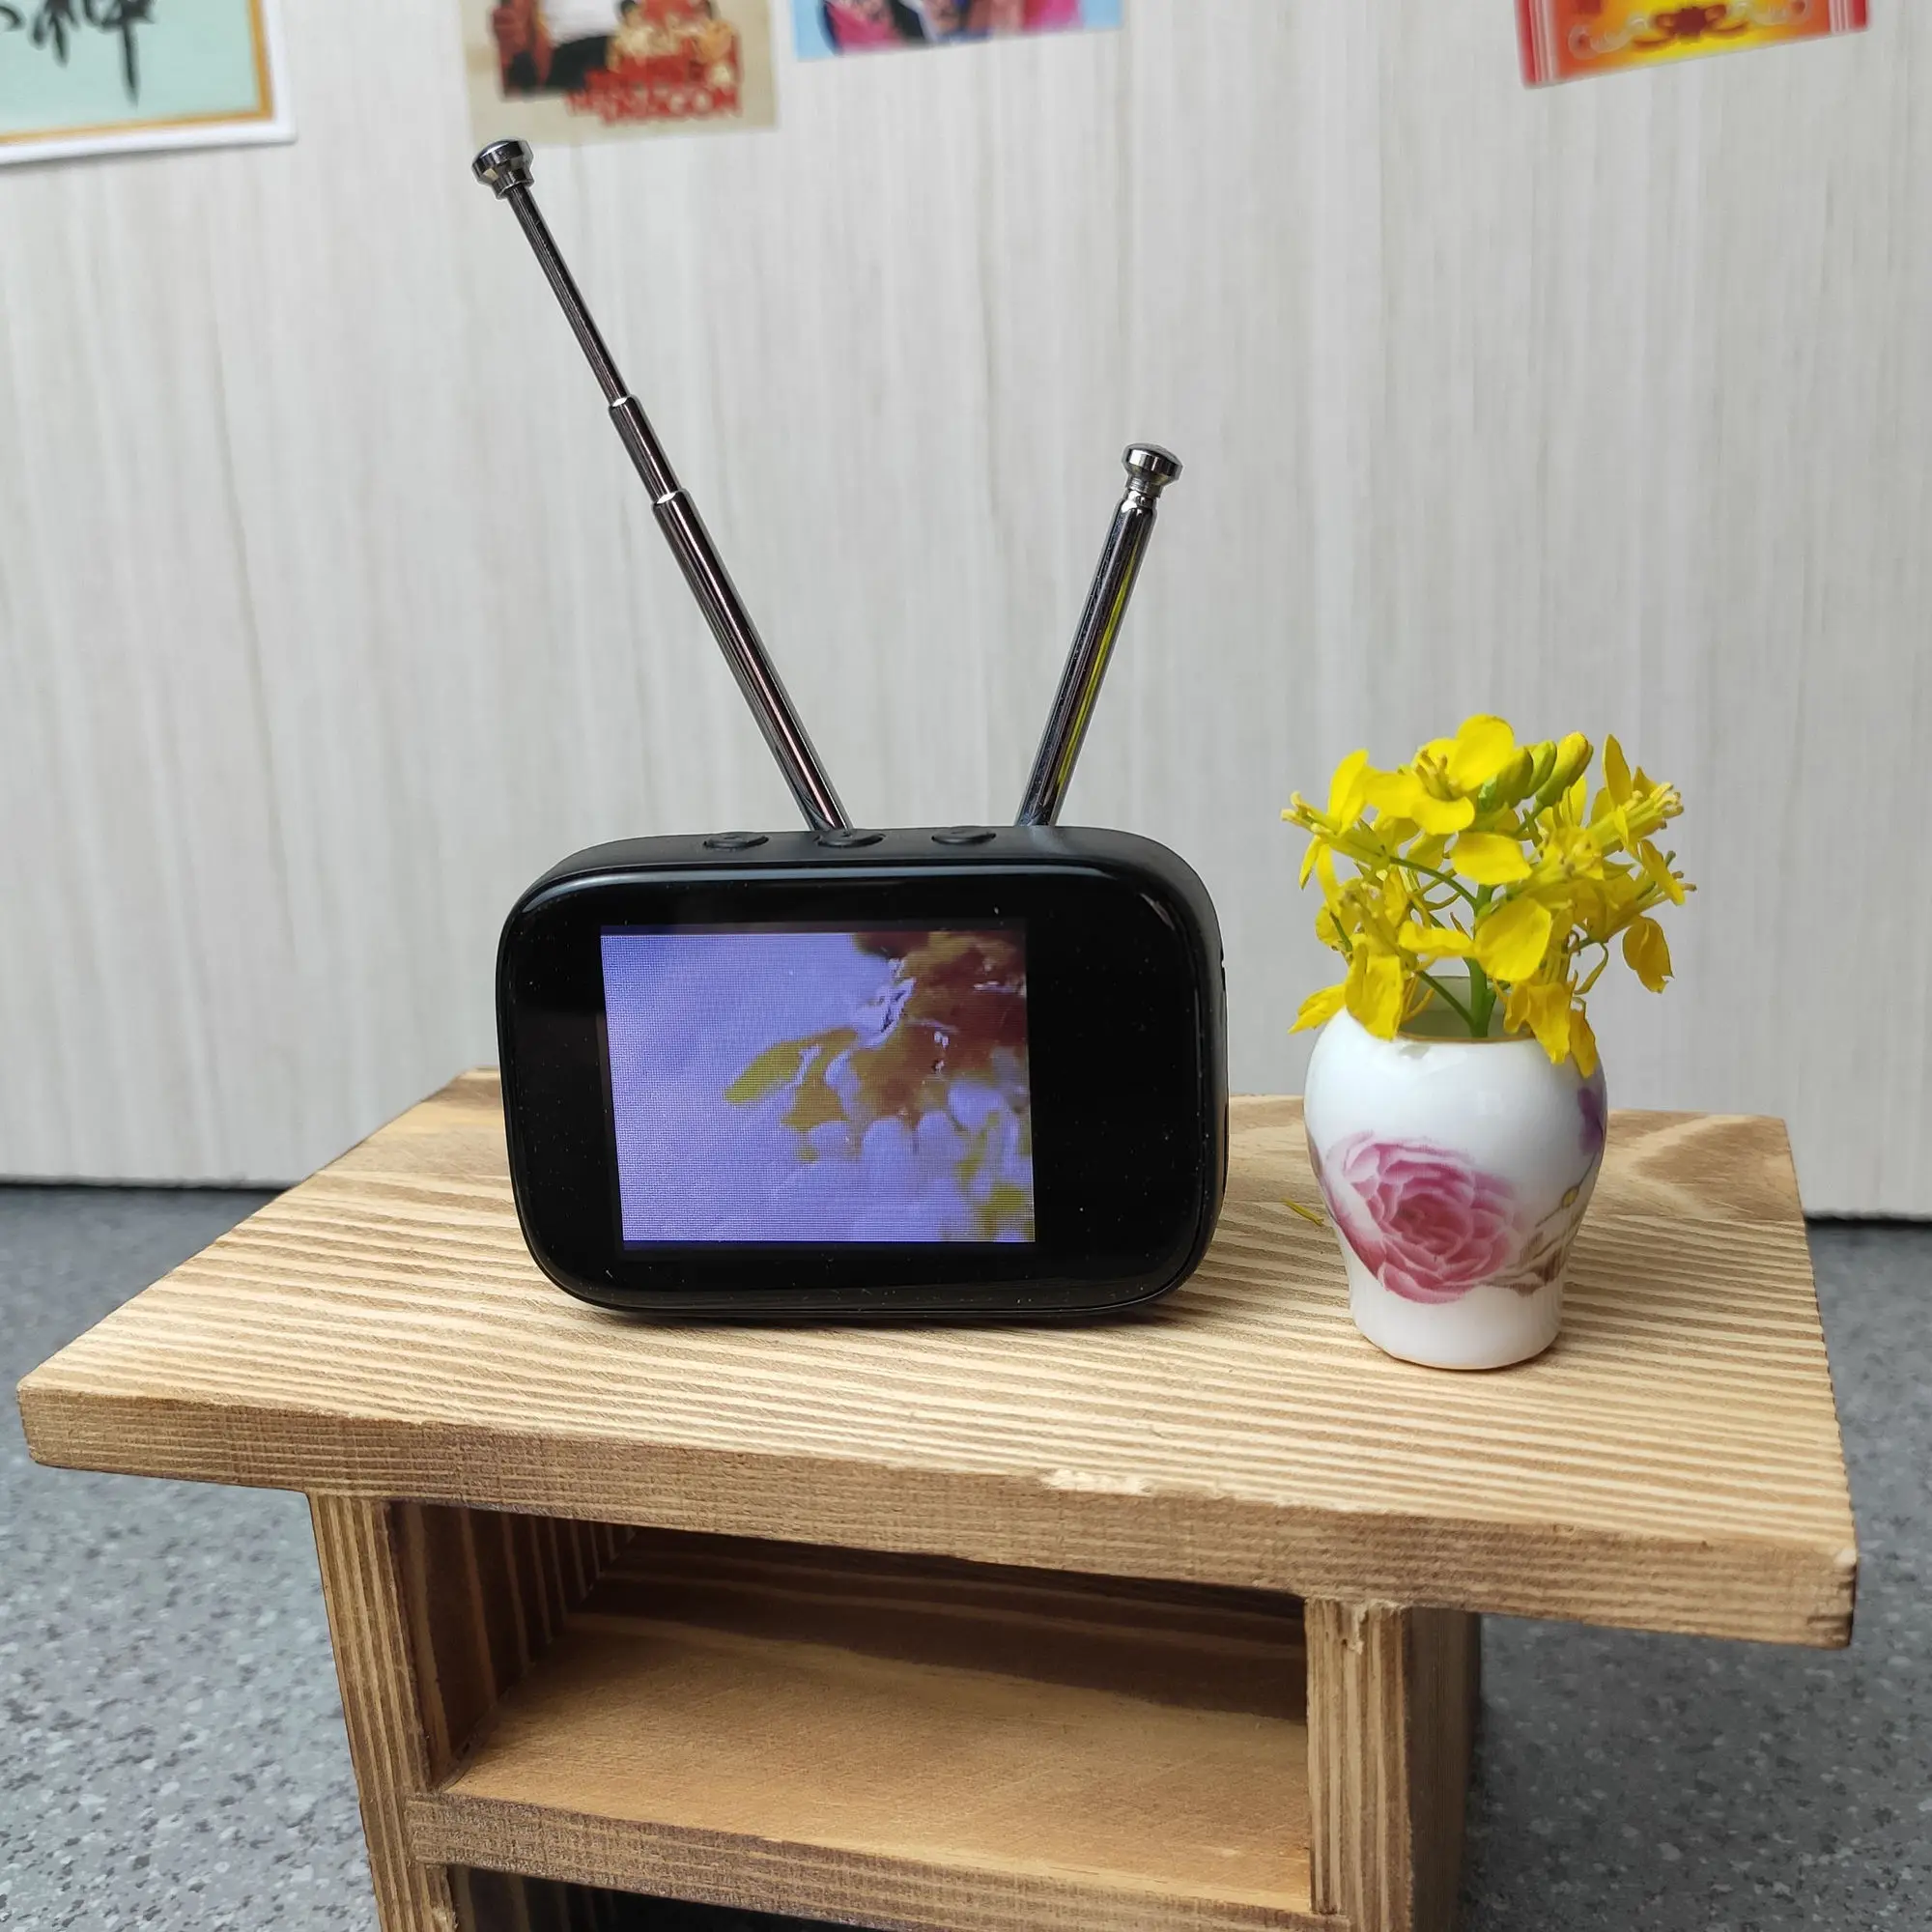 Ретро Мини-телевизор с сенсорным экраном, Телевизионные часы, Кукольный домик, модель сцены, Миниатюрная модель телевизора, Игрушки, Кухонная мебель, Настраиваемый контент2